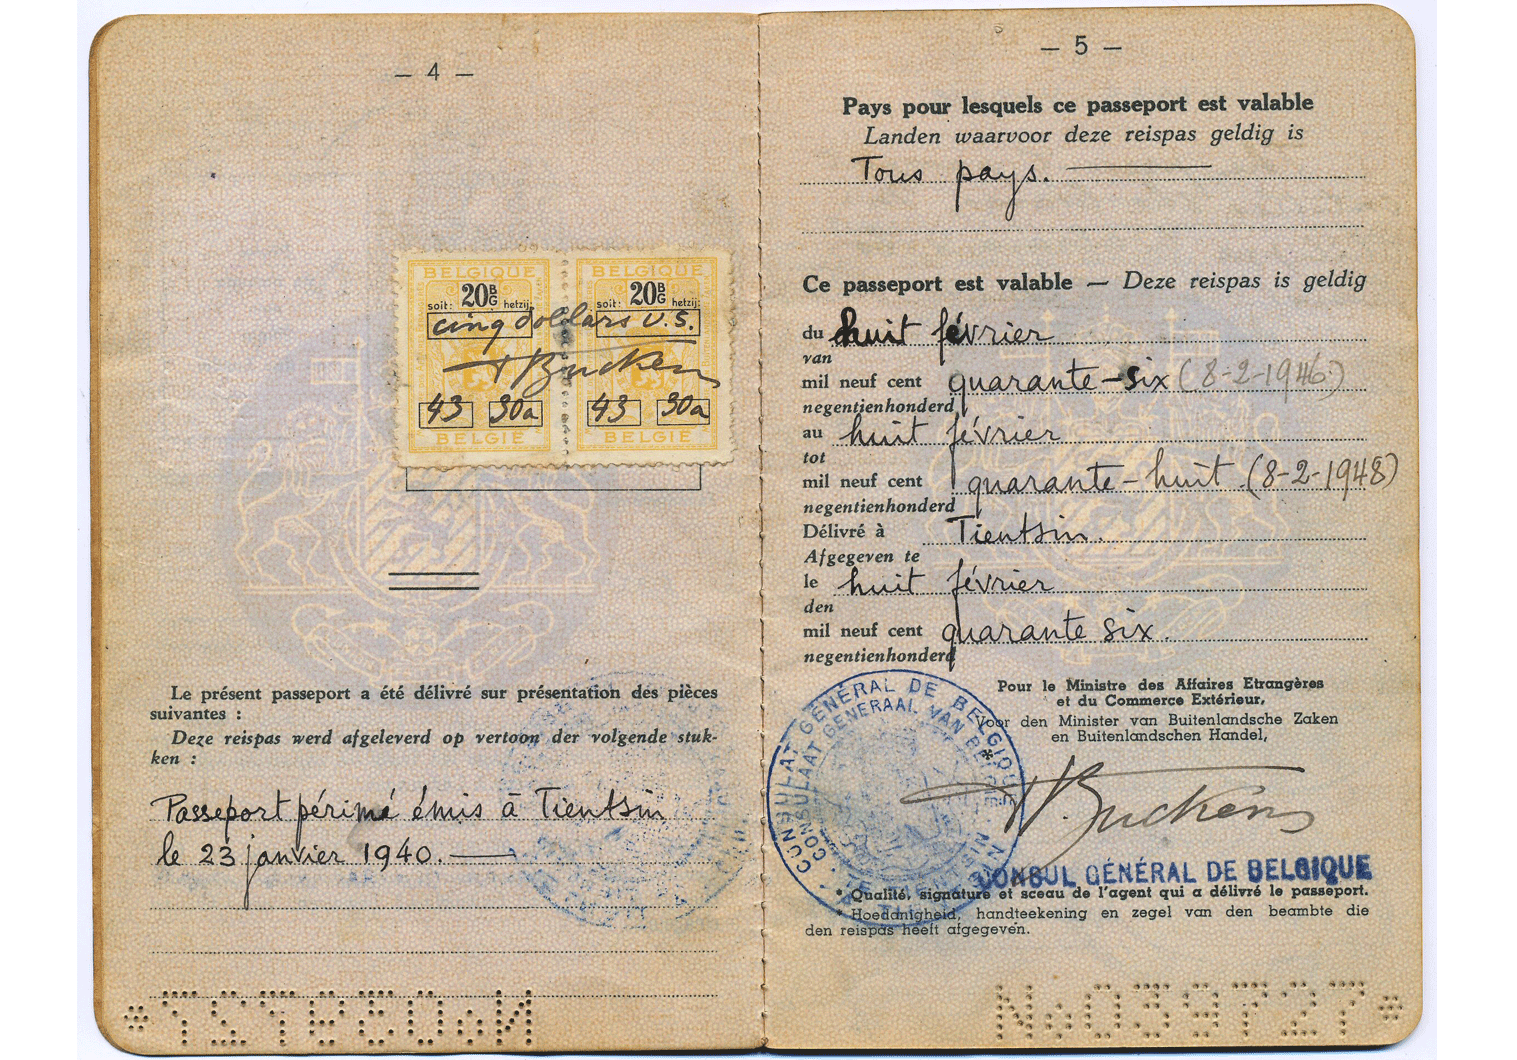 Belgium issued passport from Tianjin